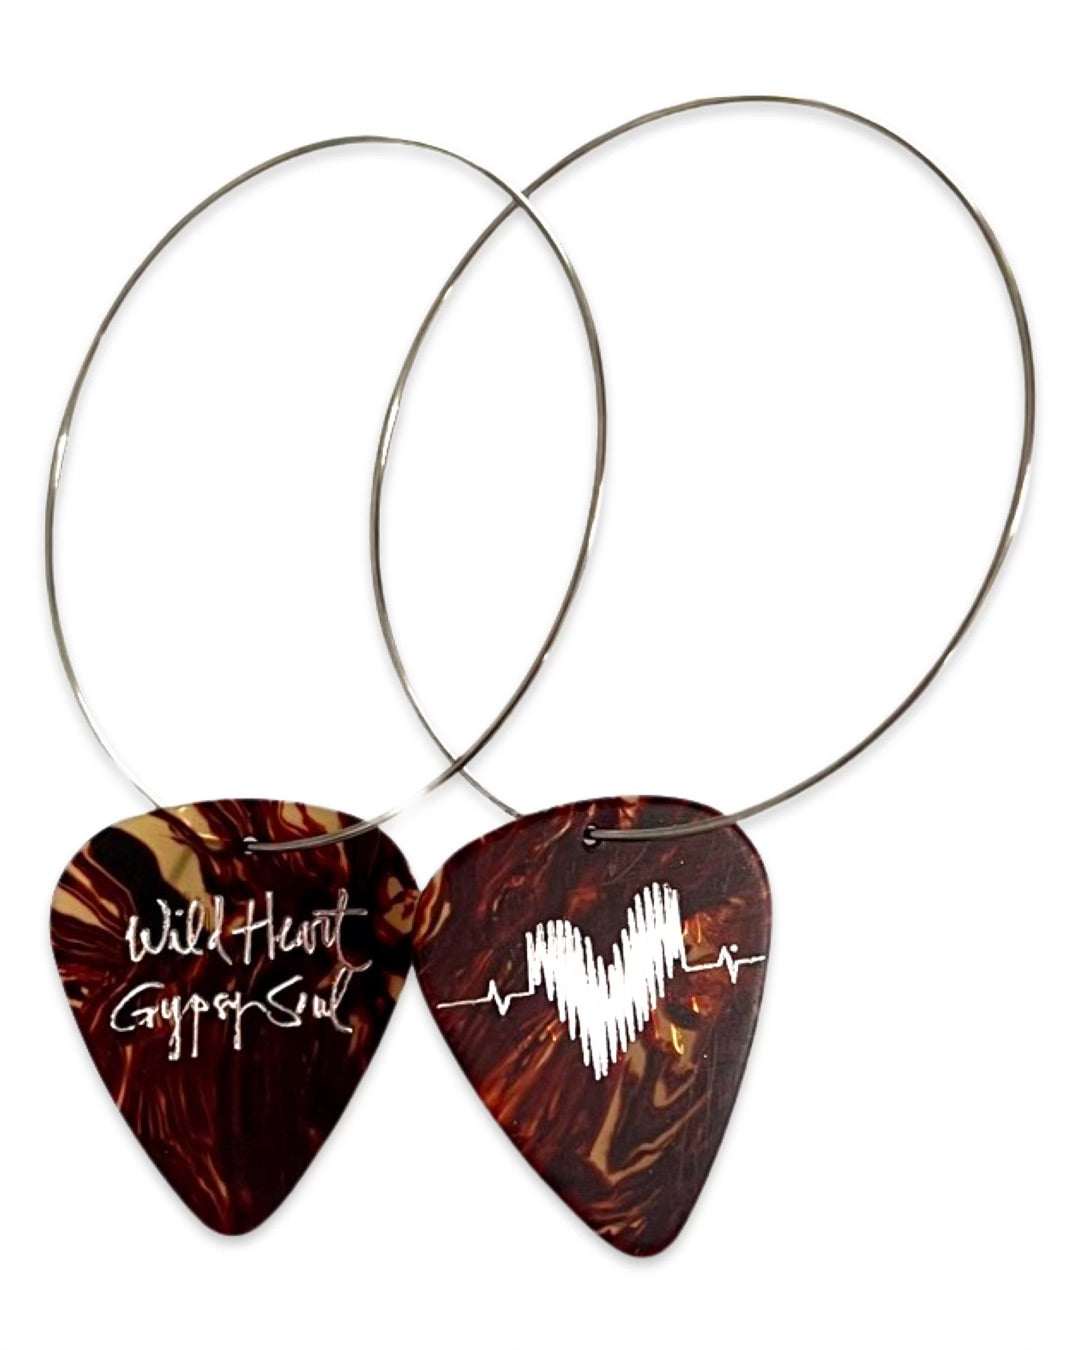 Wild Heart Gypsy Soul Tortoise Single Guitar Pick Earrings